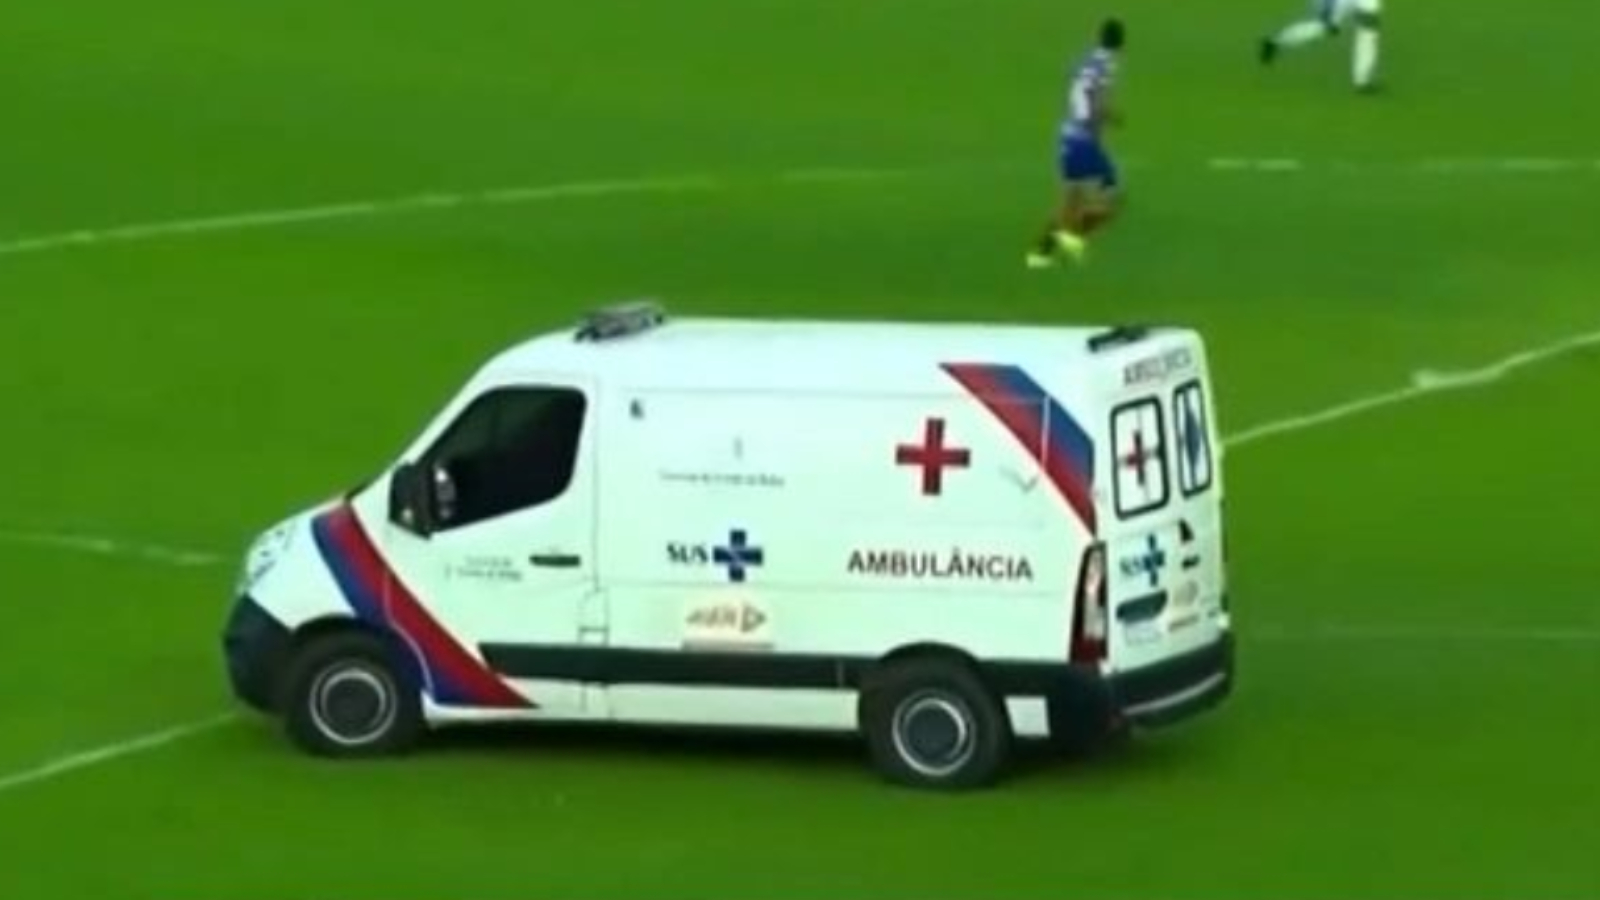 Βραζιλία: Ασθενοφόρο μπήκε στον αγωνιστικό χώρο την ώρα του ματς (vid)